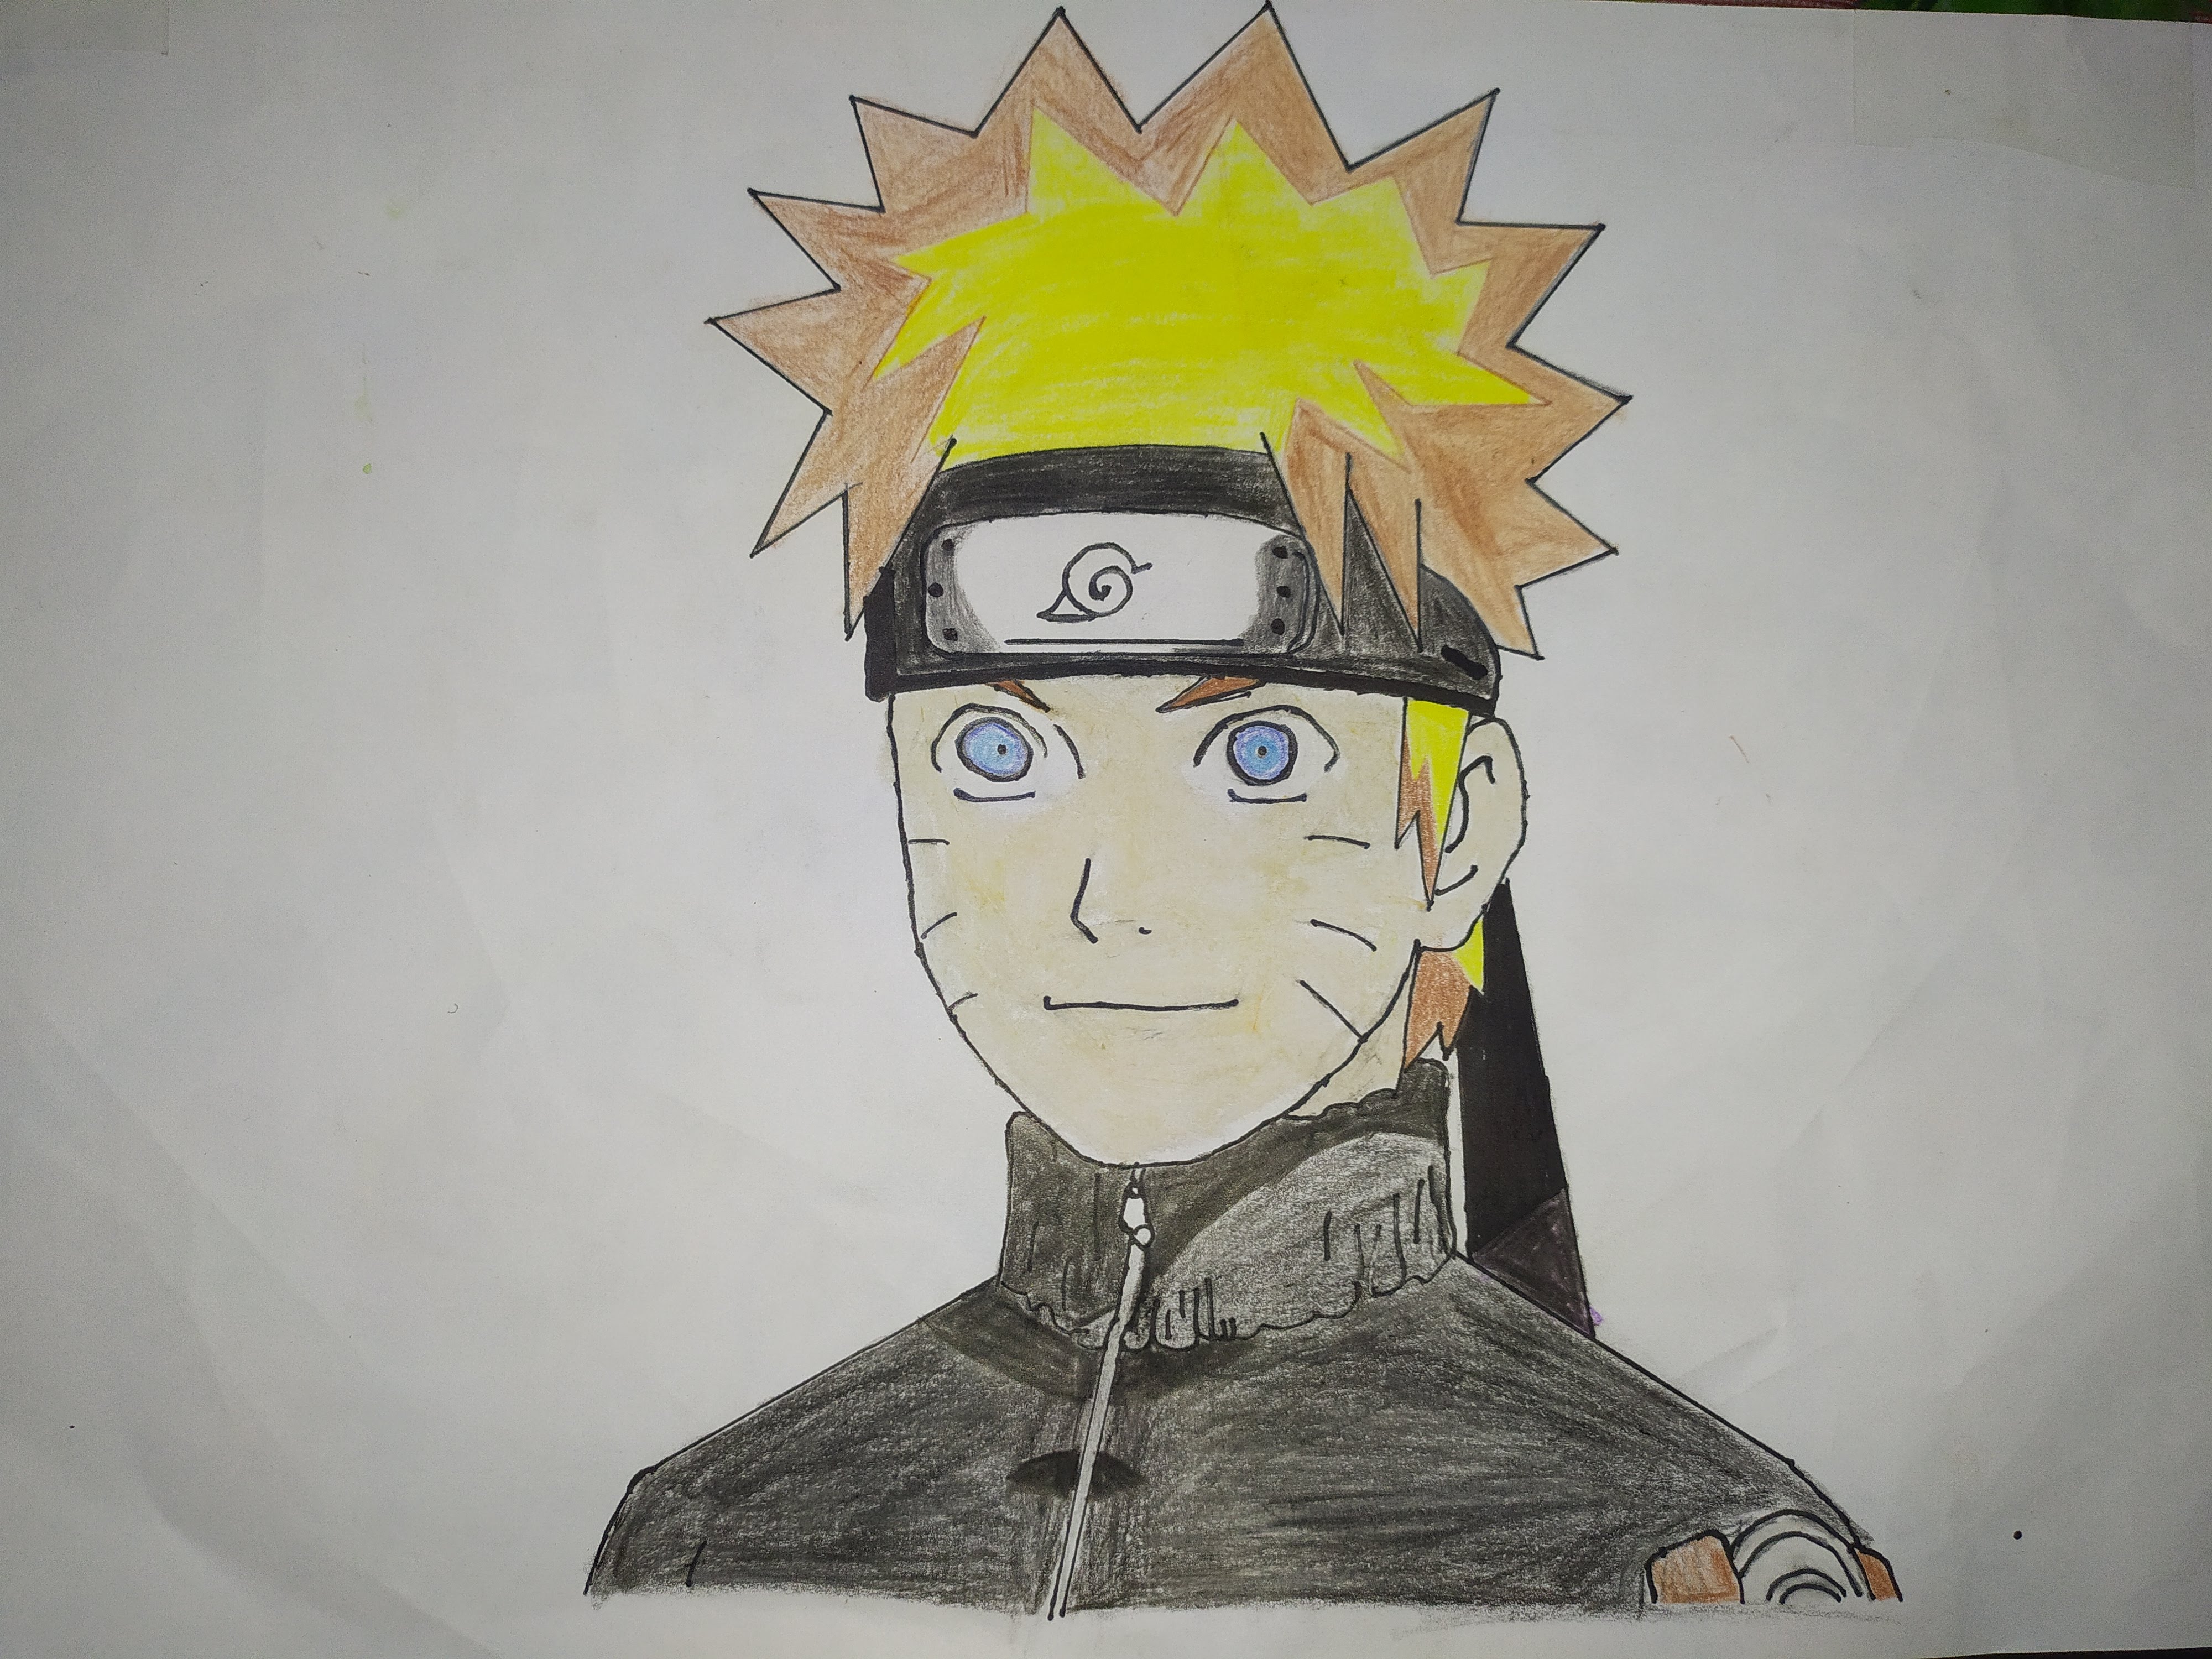 How to draw Naruto  Anime  Naruto drawings Naruto drawings easy Naruto  sketch drawing